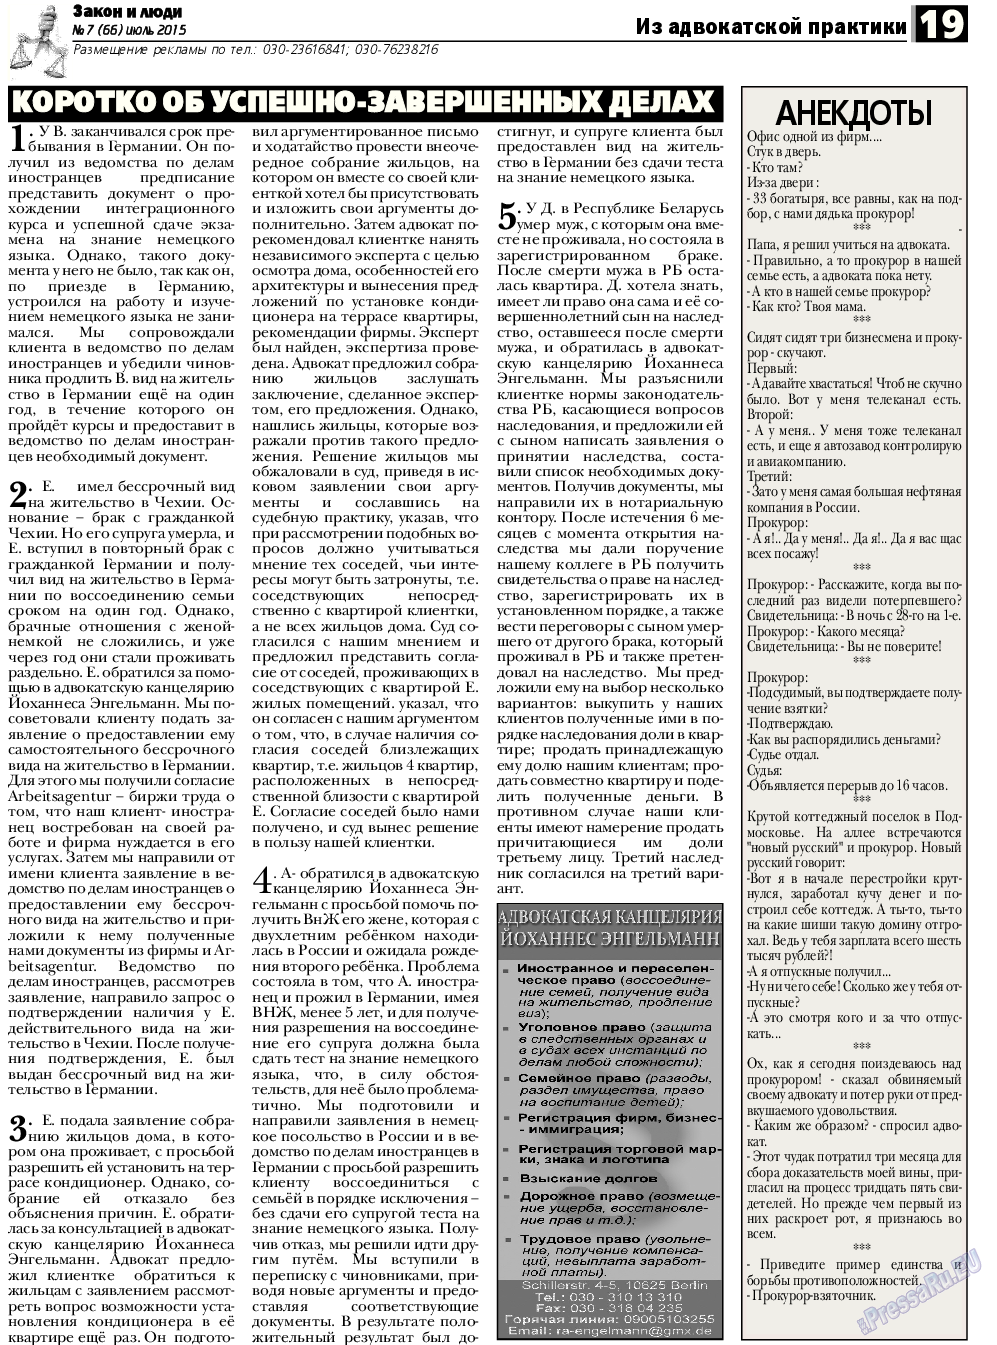 Закон и люди (газета). 2015 год, номер 7, стр. 19